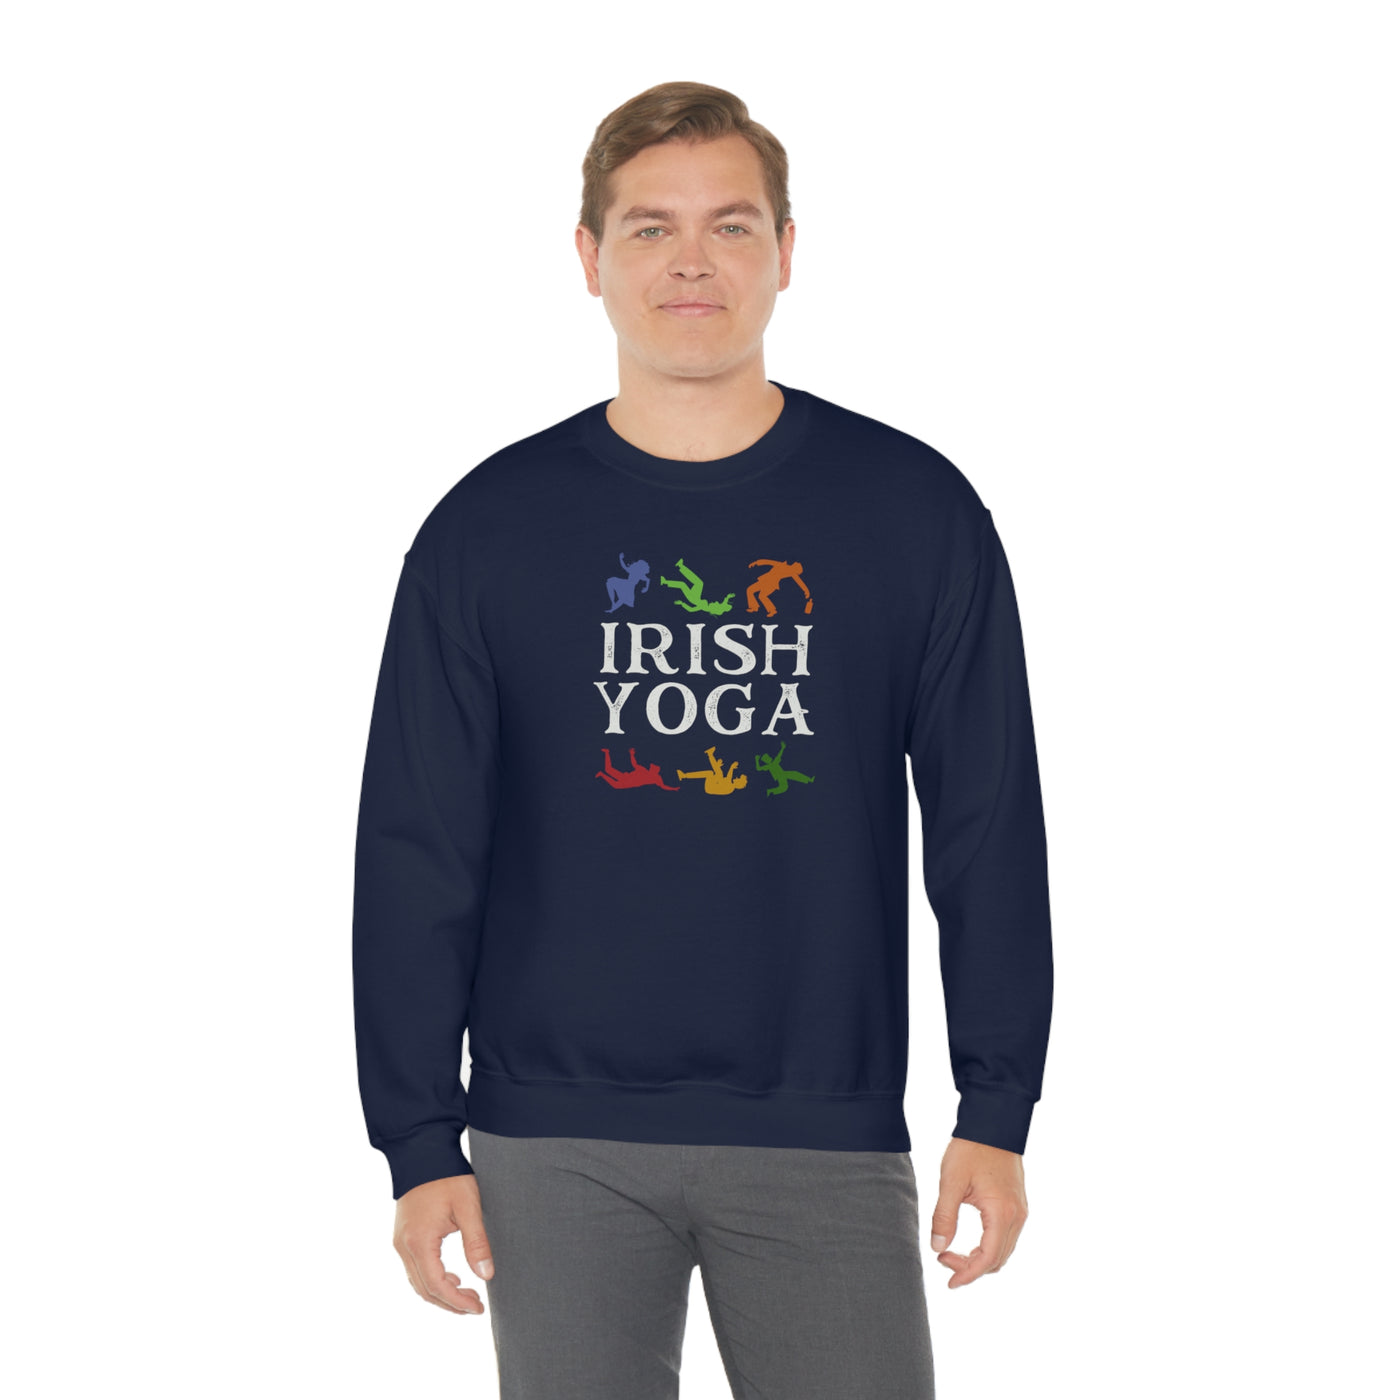 Irish Yoga Crewneck Sweatshirt